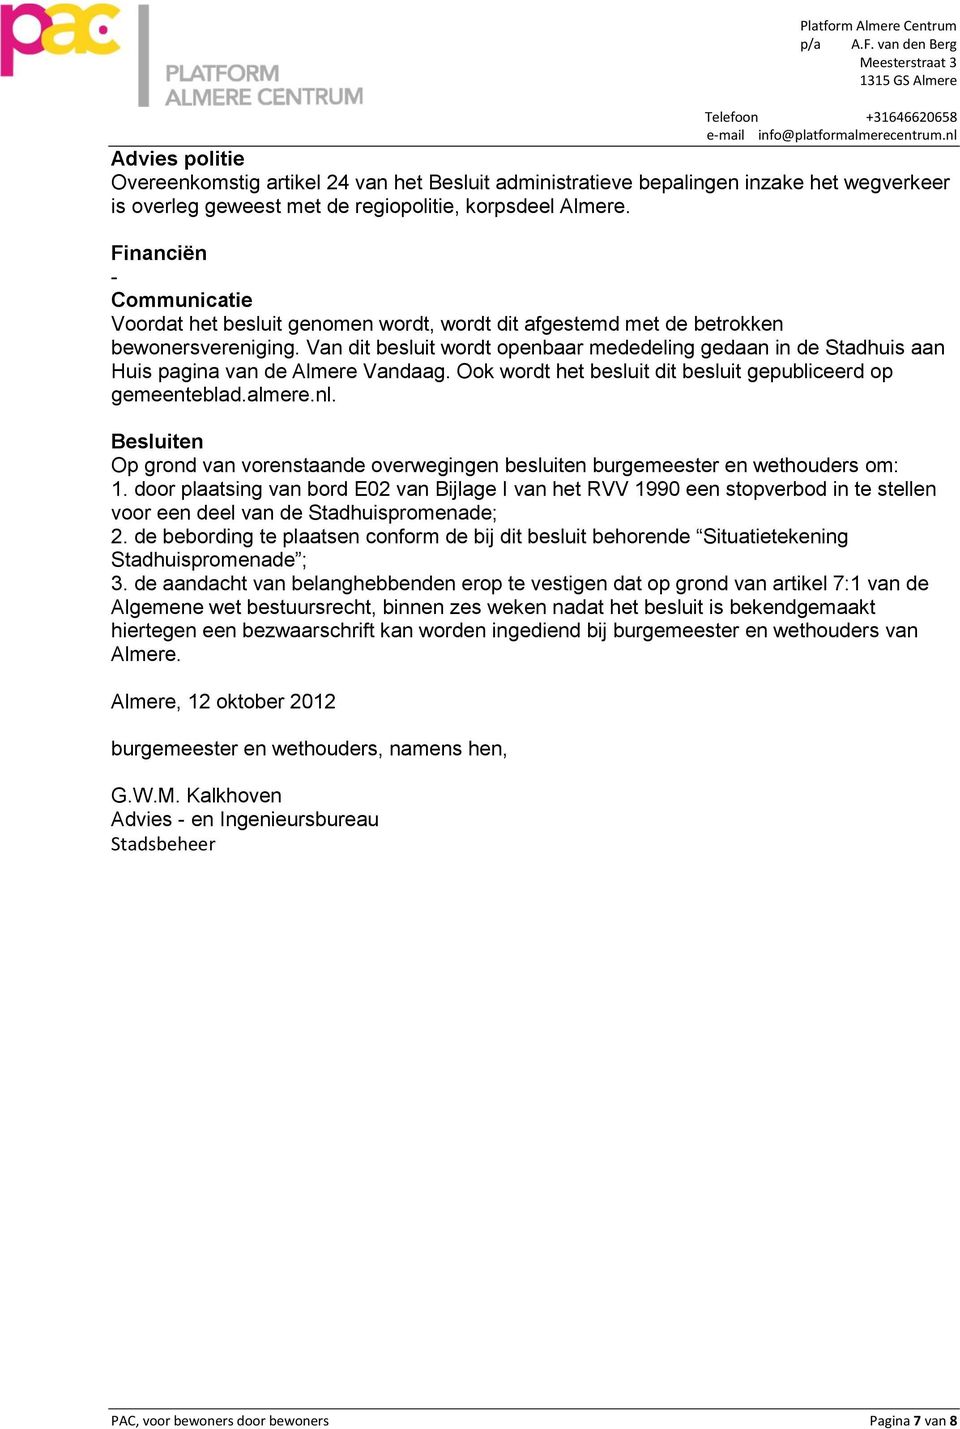 Van dit besluit wordt openbaar mededeling gedaan in de Stadhuis aan Huis pagina van de Almere Vandaag. Ook wordt het besluit dit besluit gepubliceerd op gemeenteblad.almere.nl.